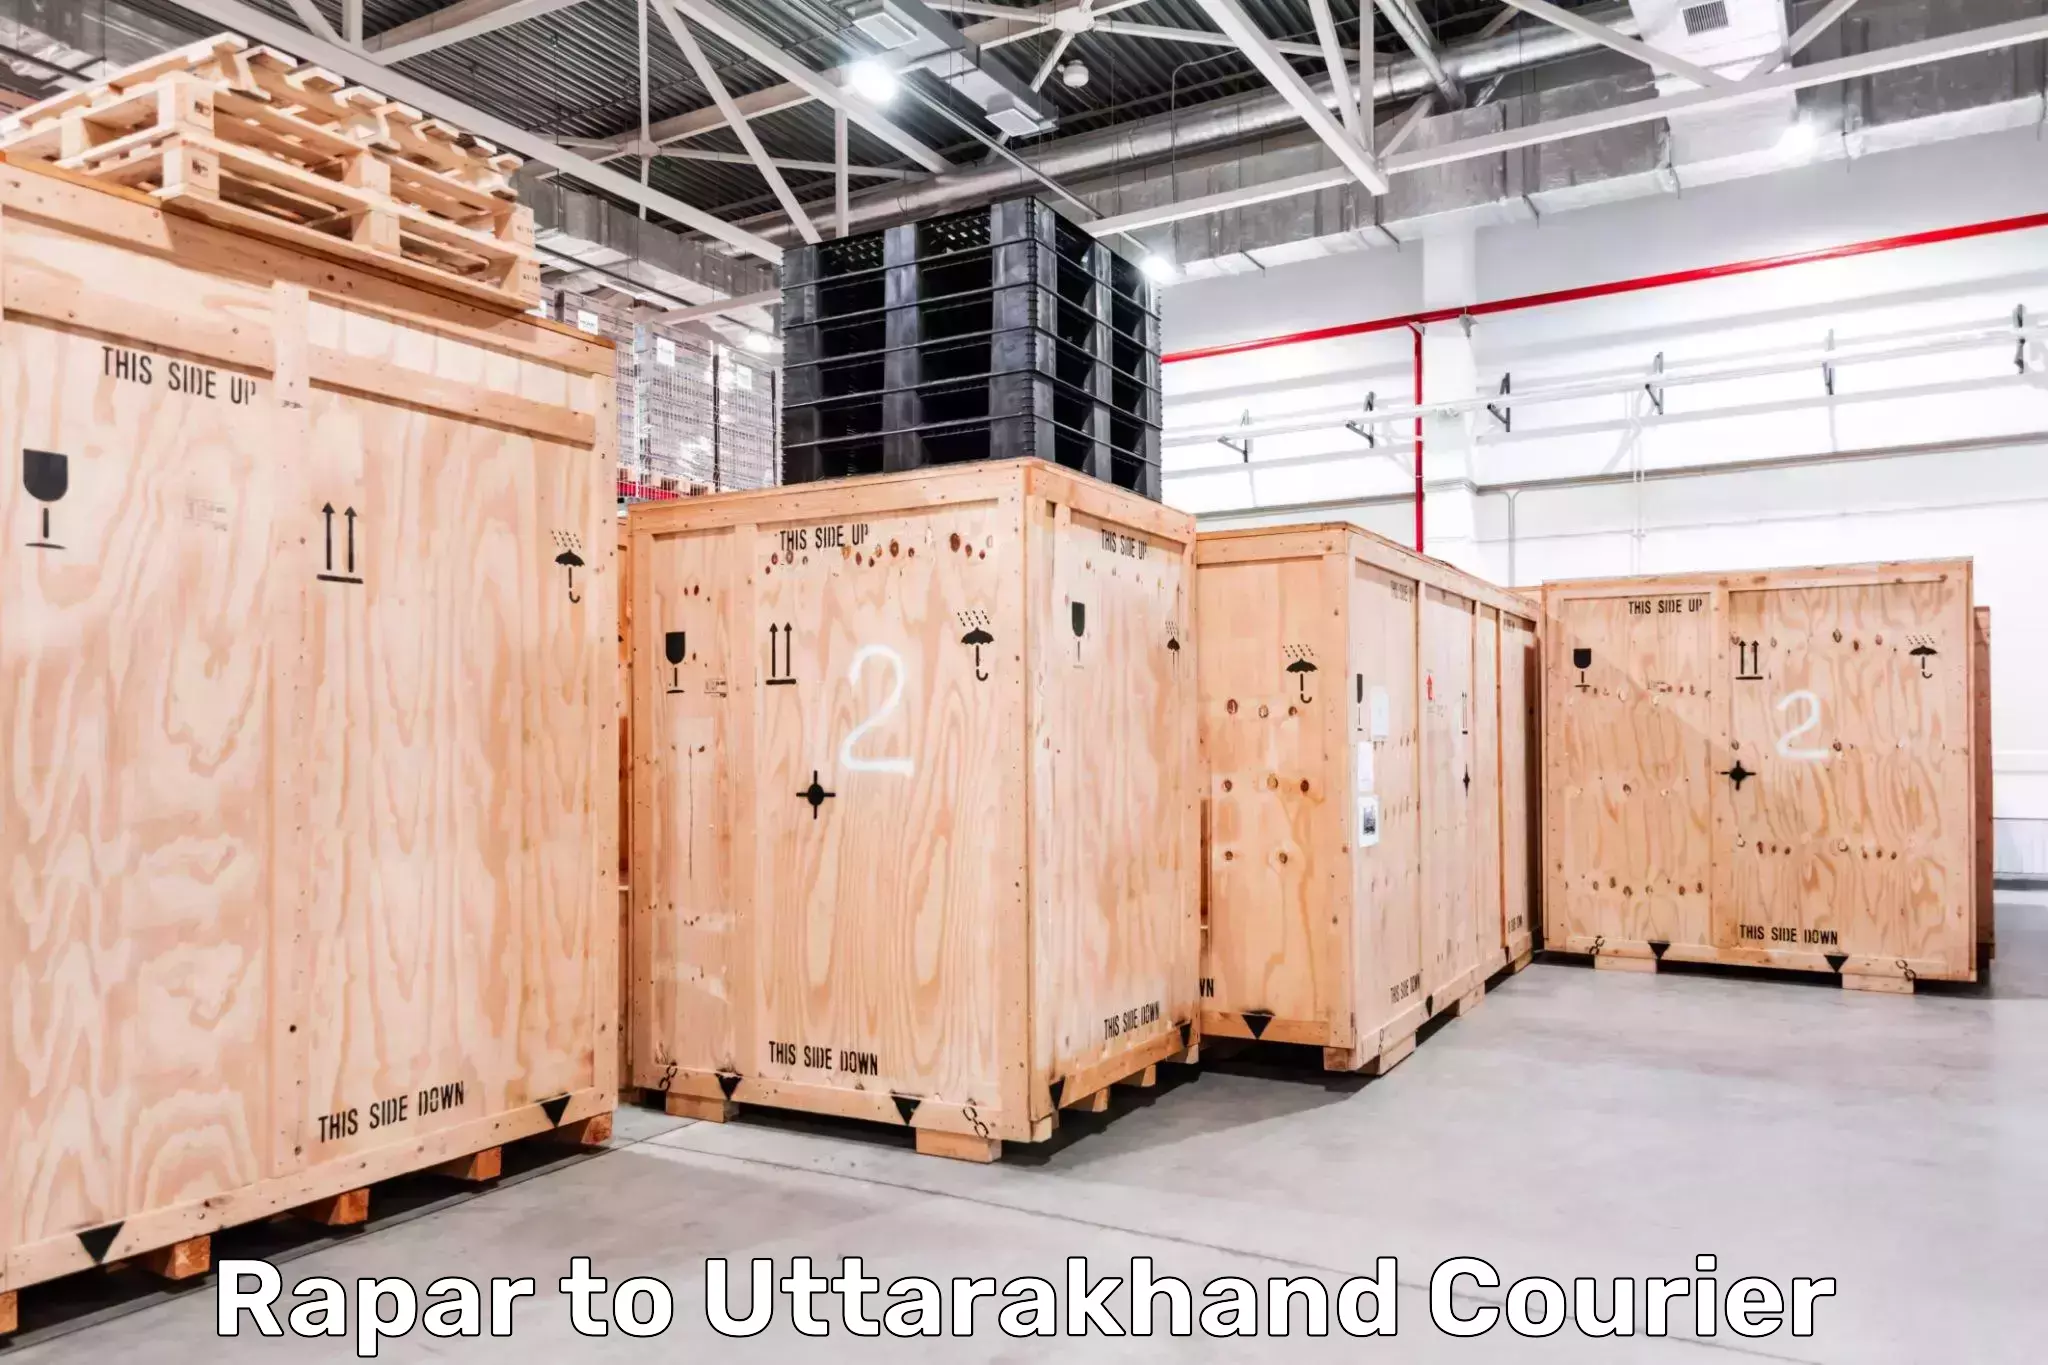 Express courier facilities Rapar to Kotdwara